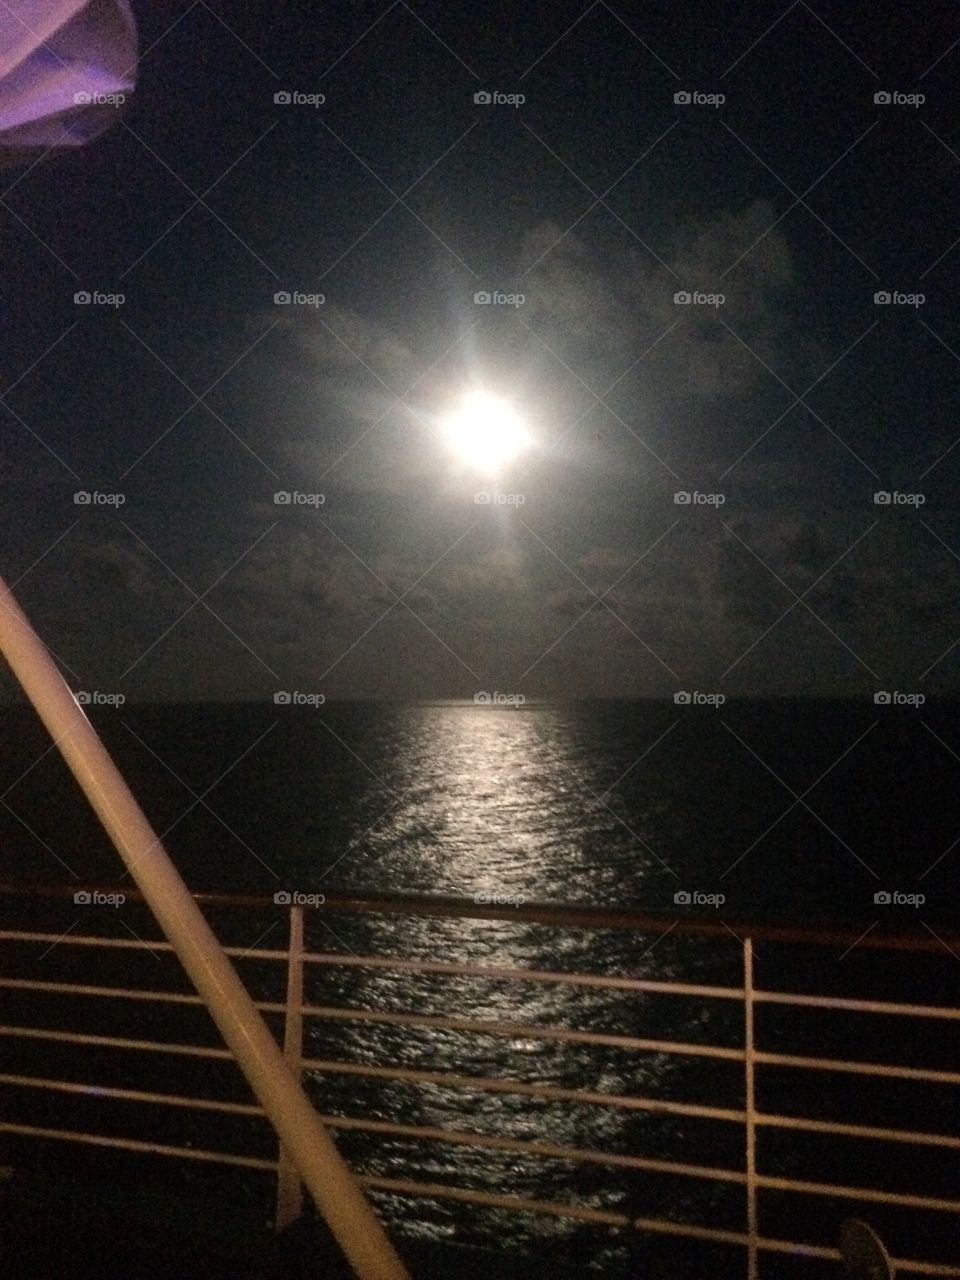 Moonlight over the ocean